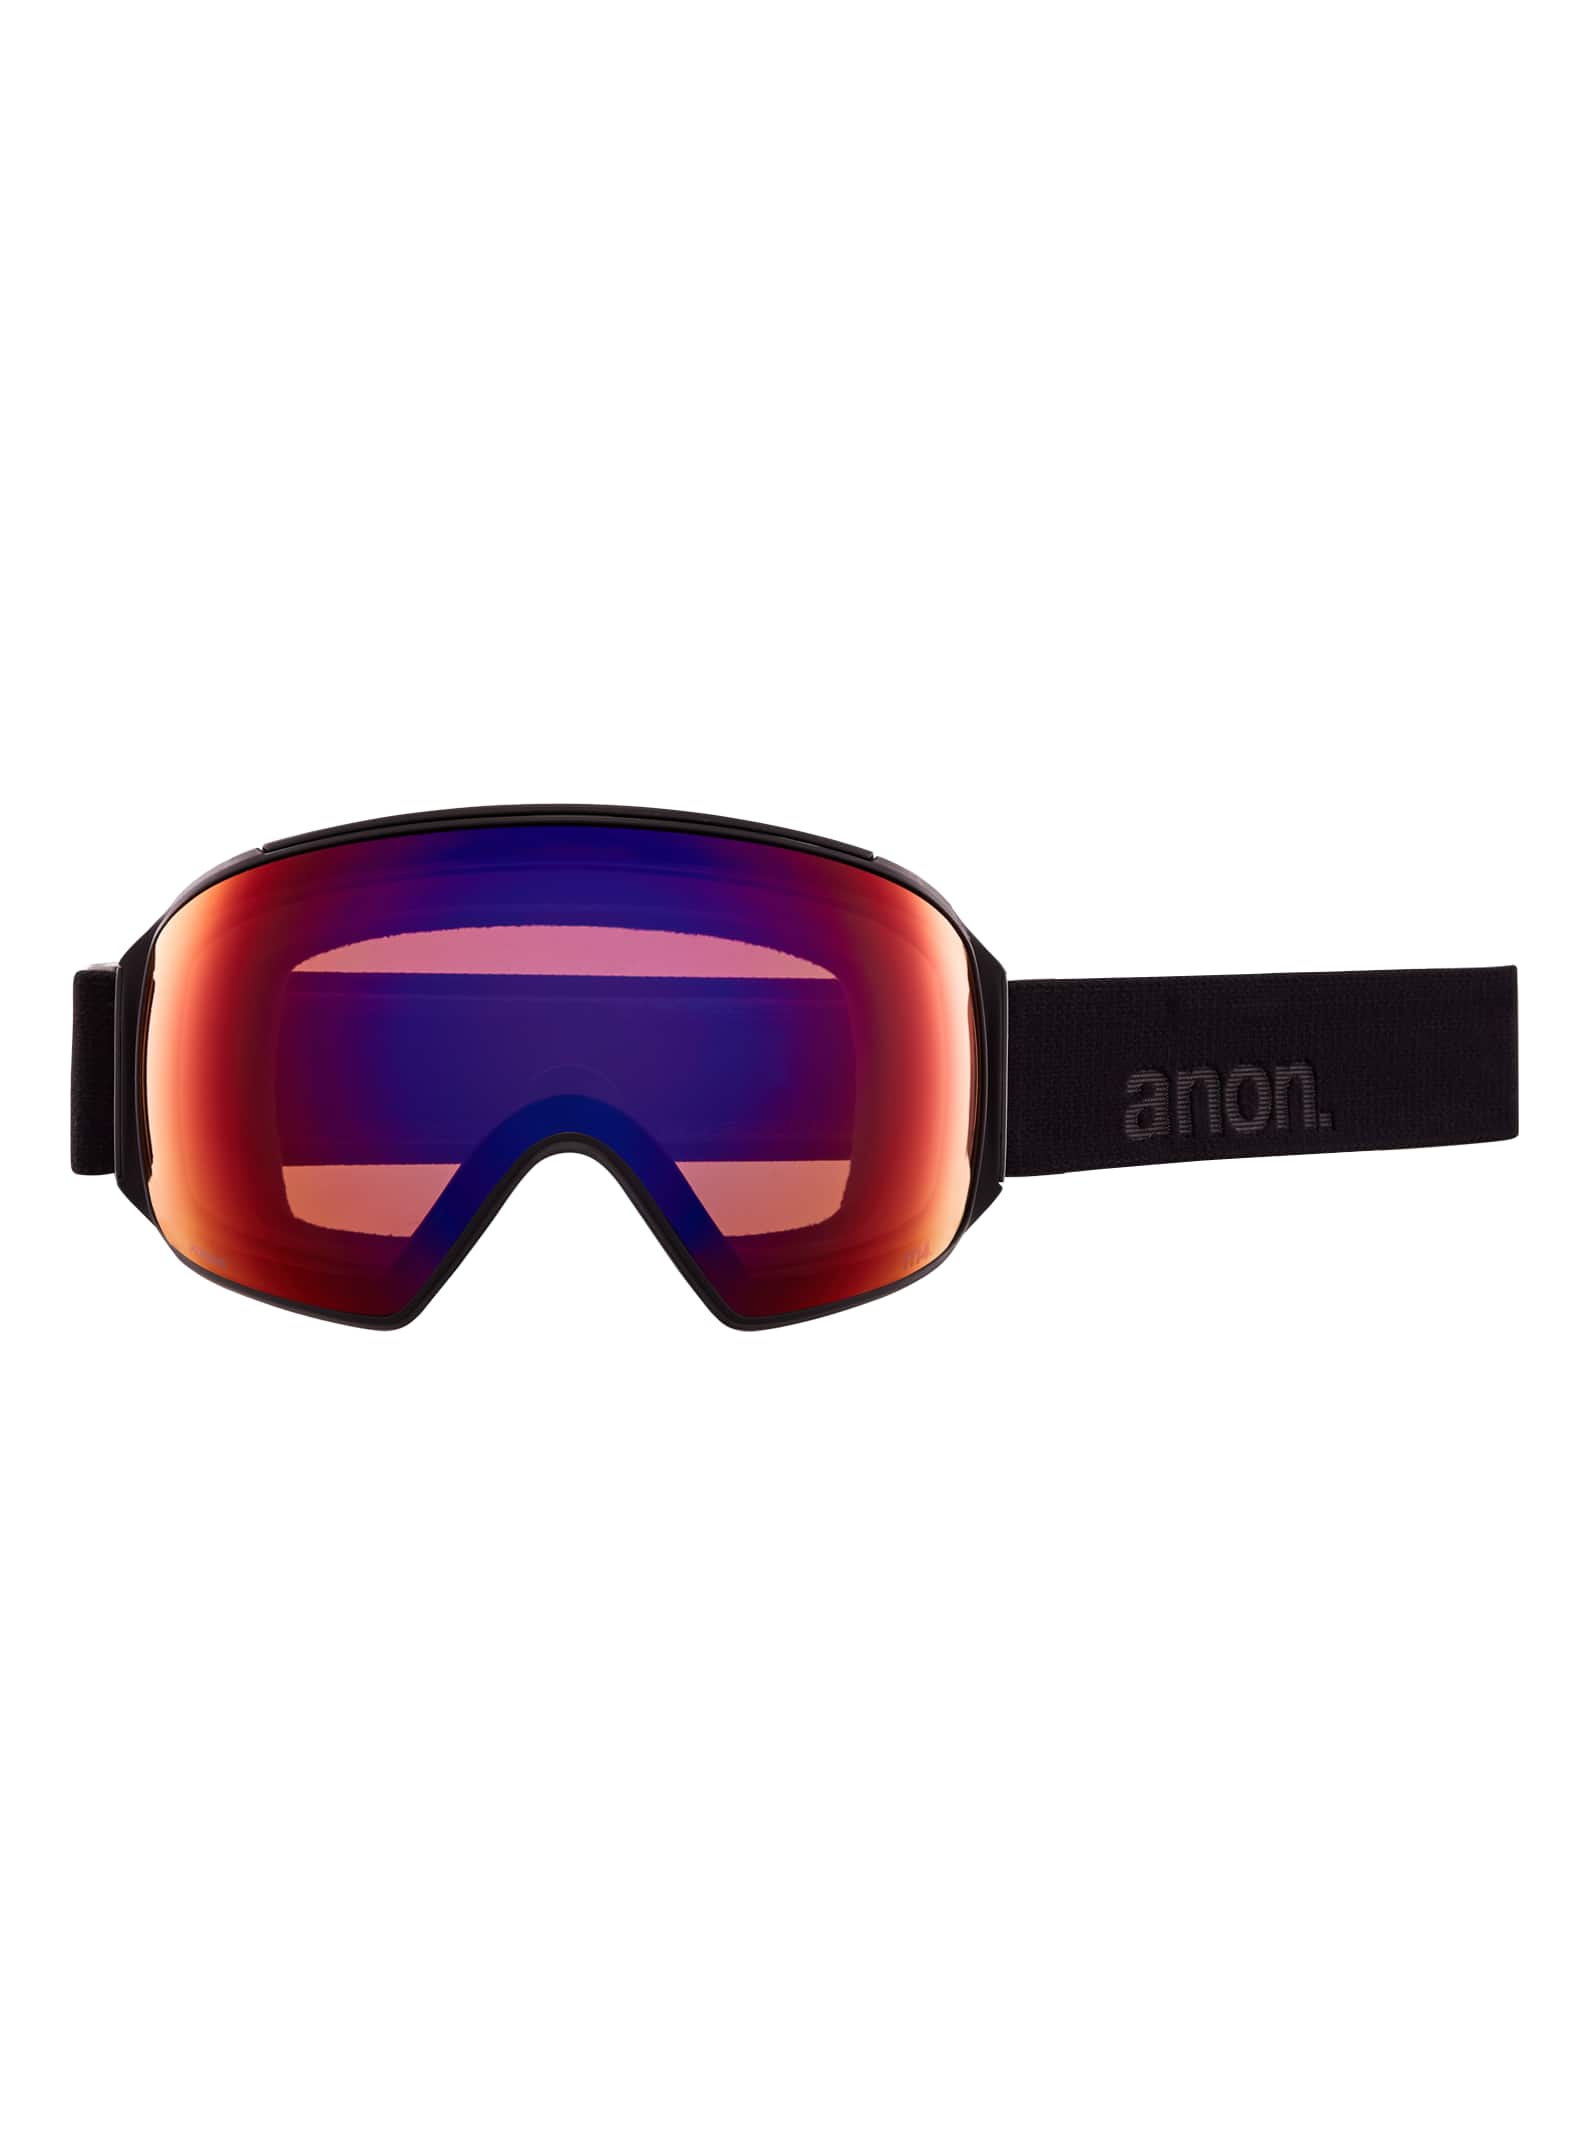 anon M4 Torische Skibrille Snowboardbrille mit Skimaske und Wechselscheibe 